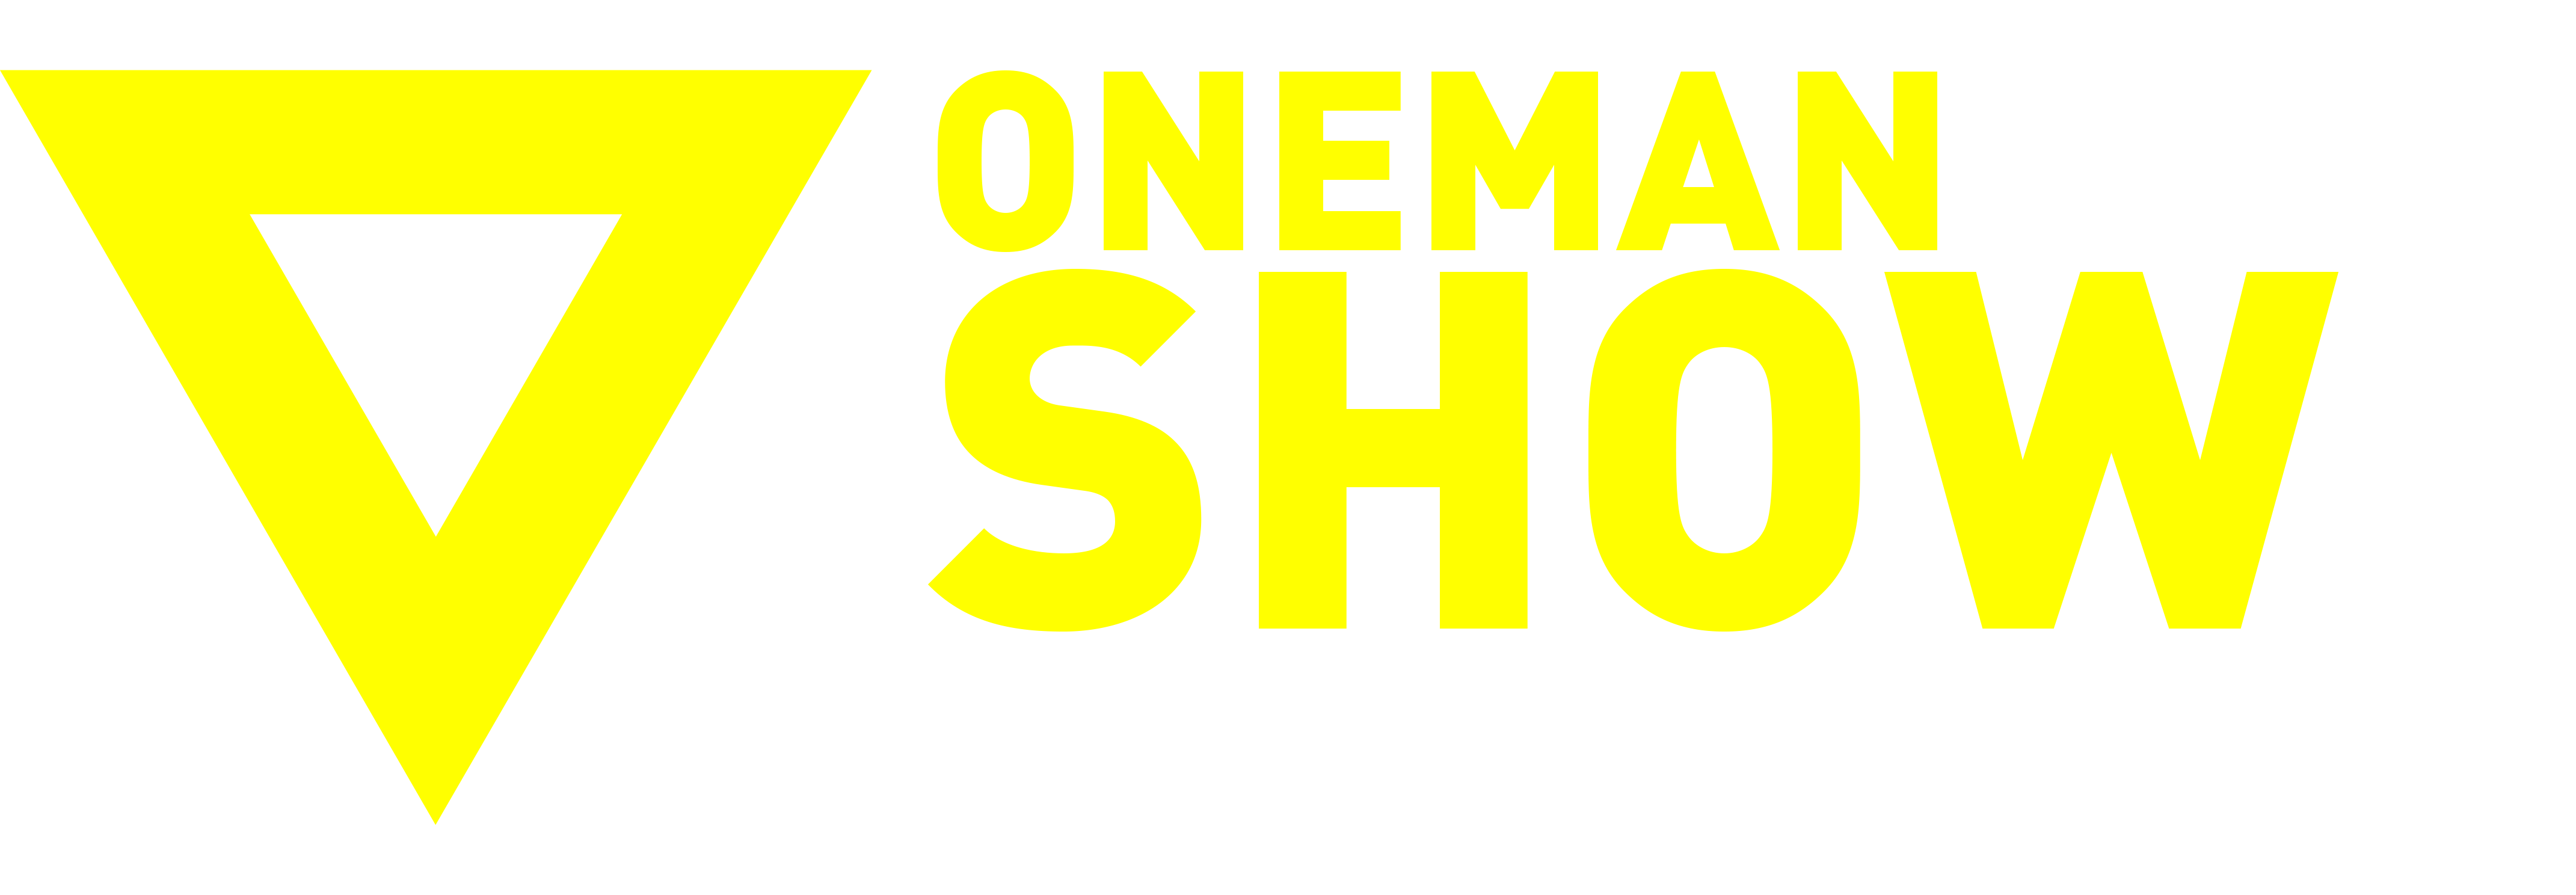 ONEMANSHOW KATY PERRY (2015)